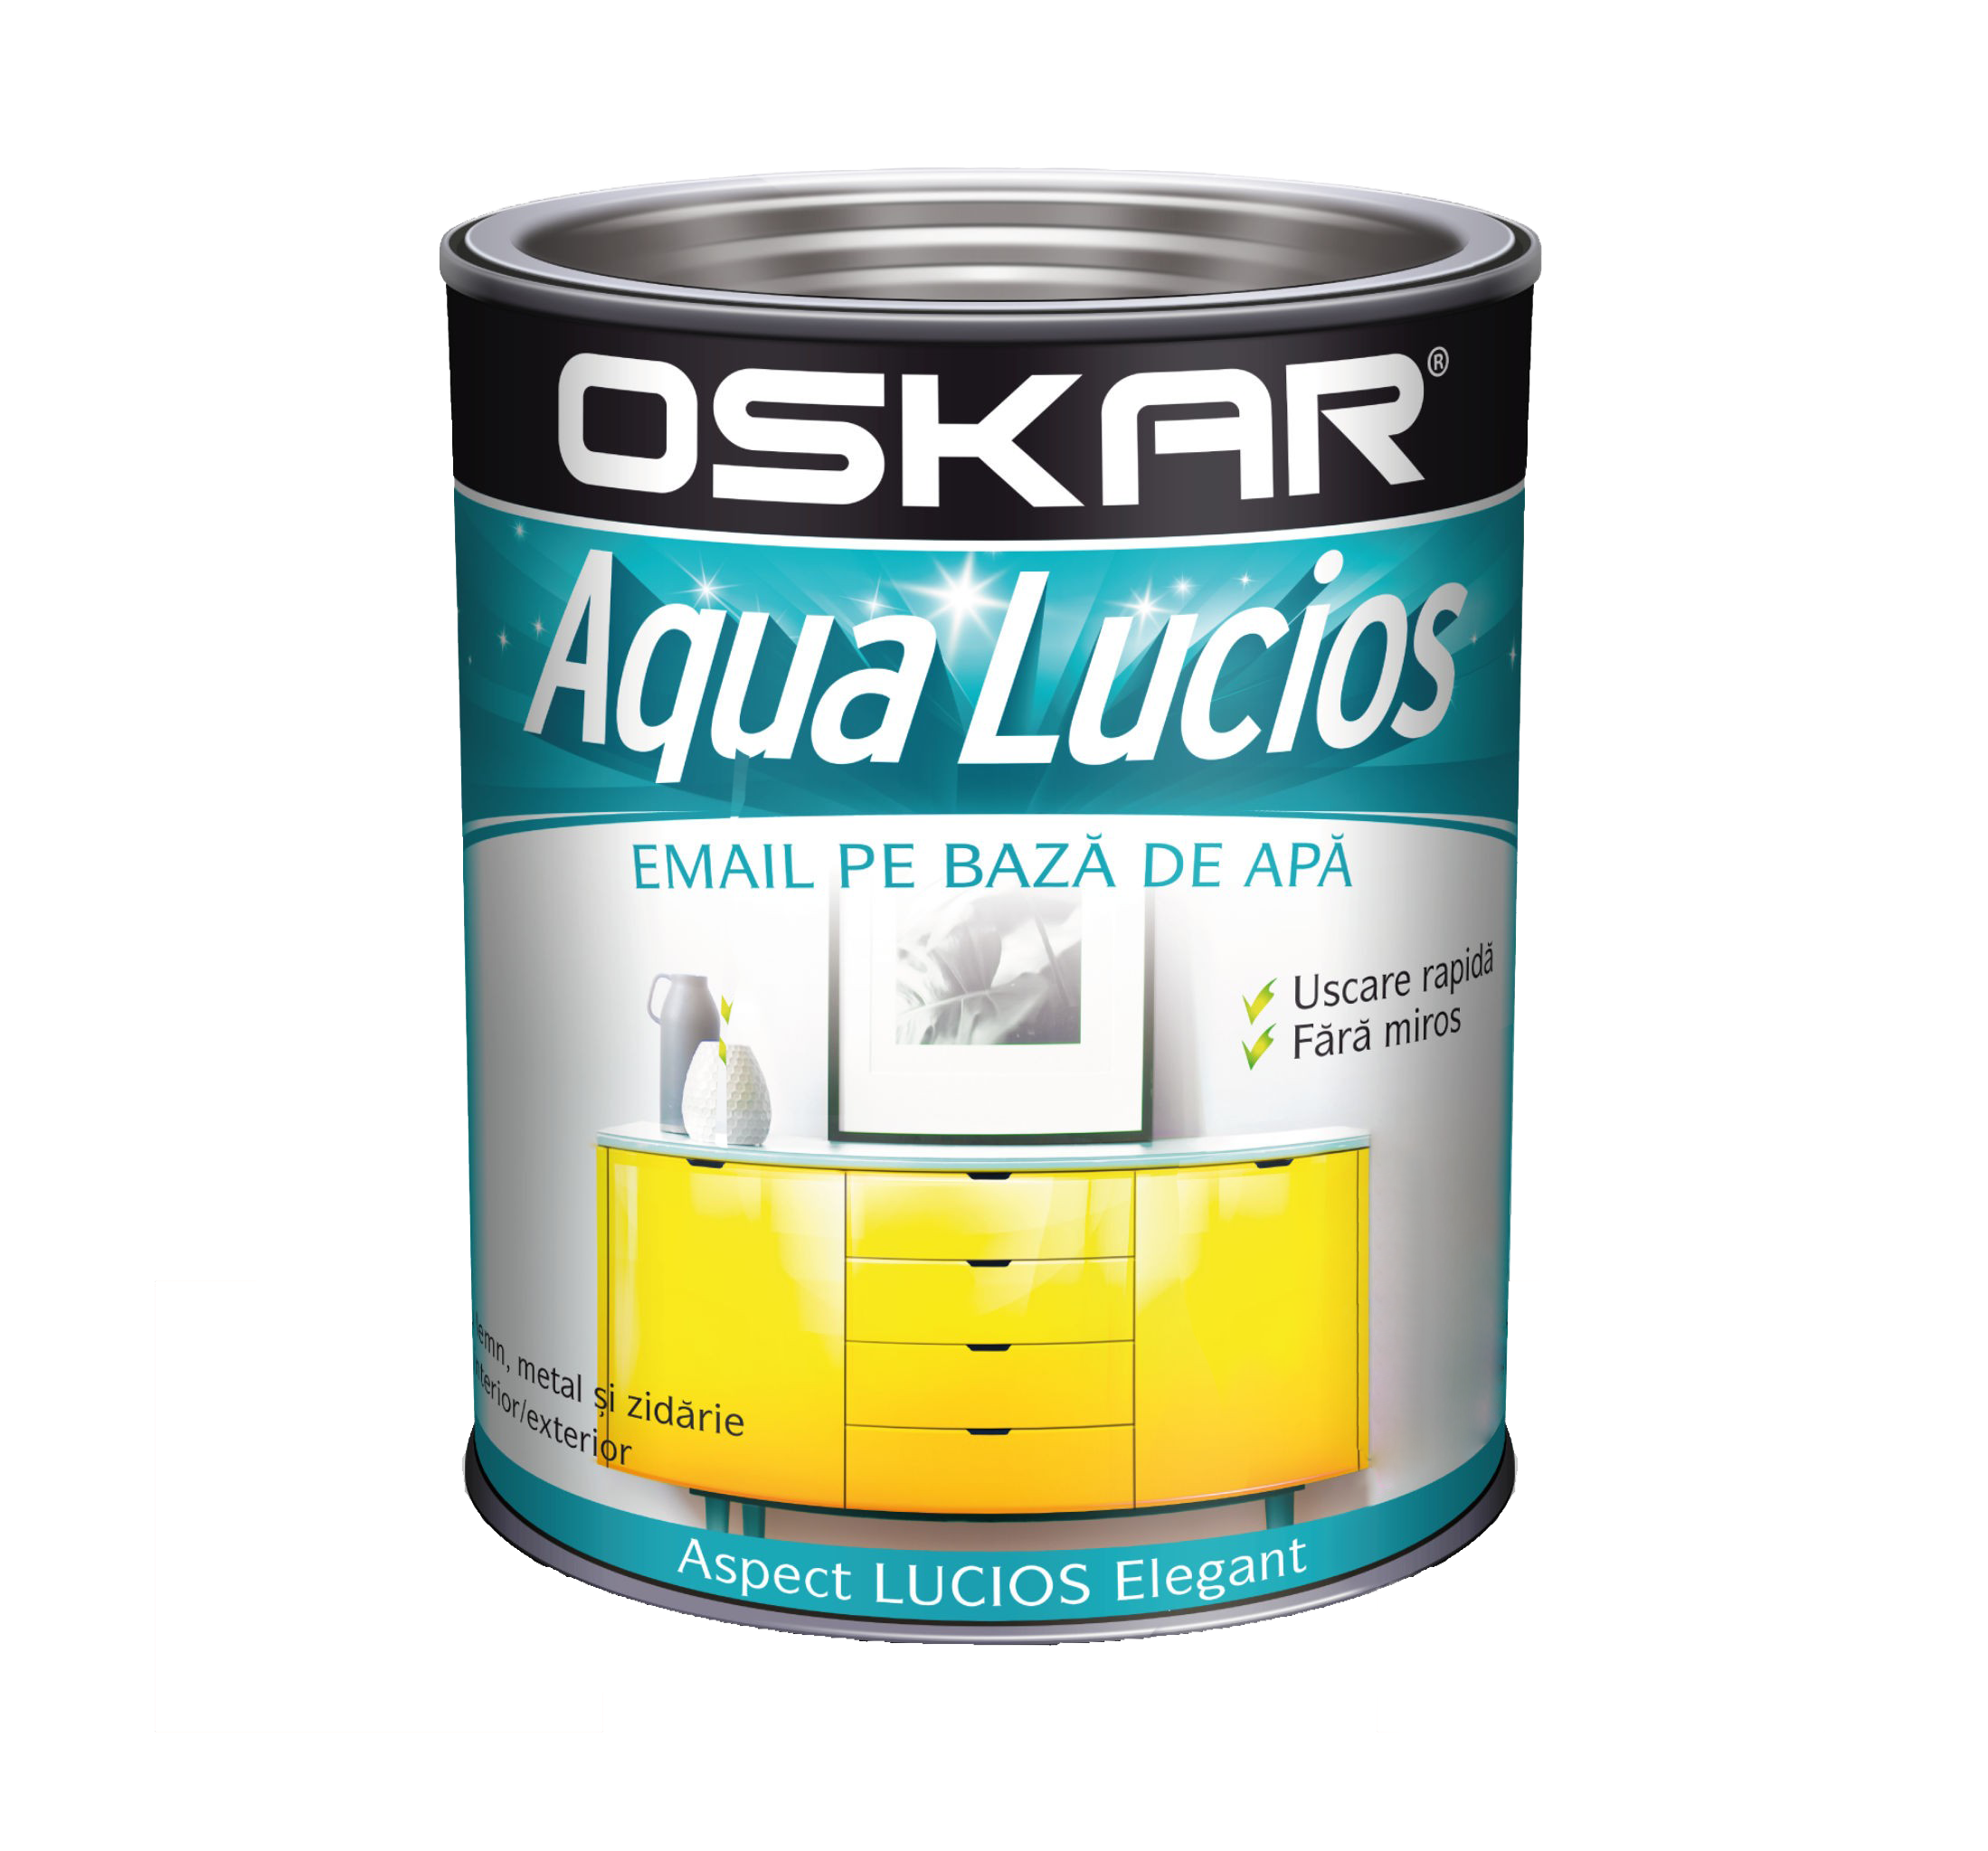 Oskar Aqua Lucios Email Visiniu picant 2.5 L oskar